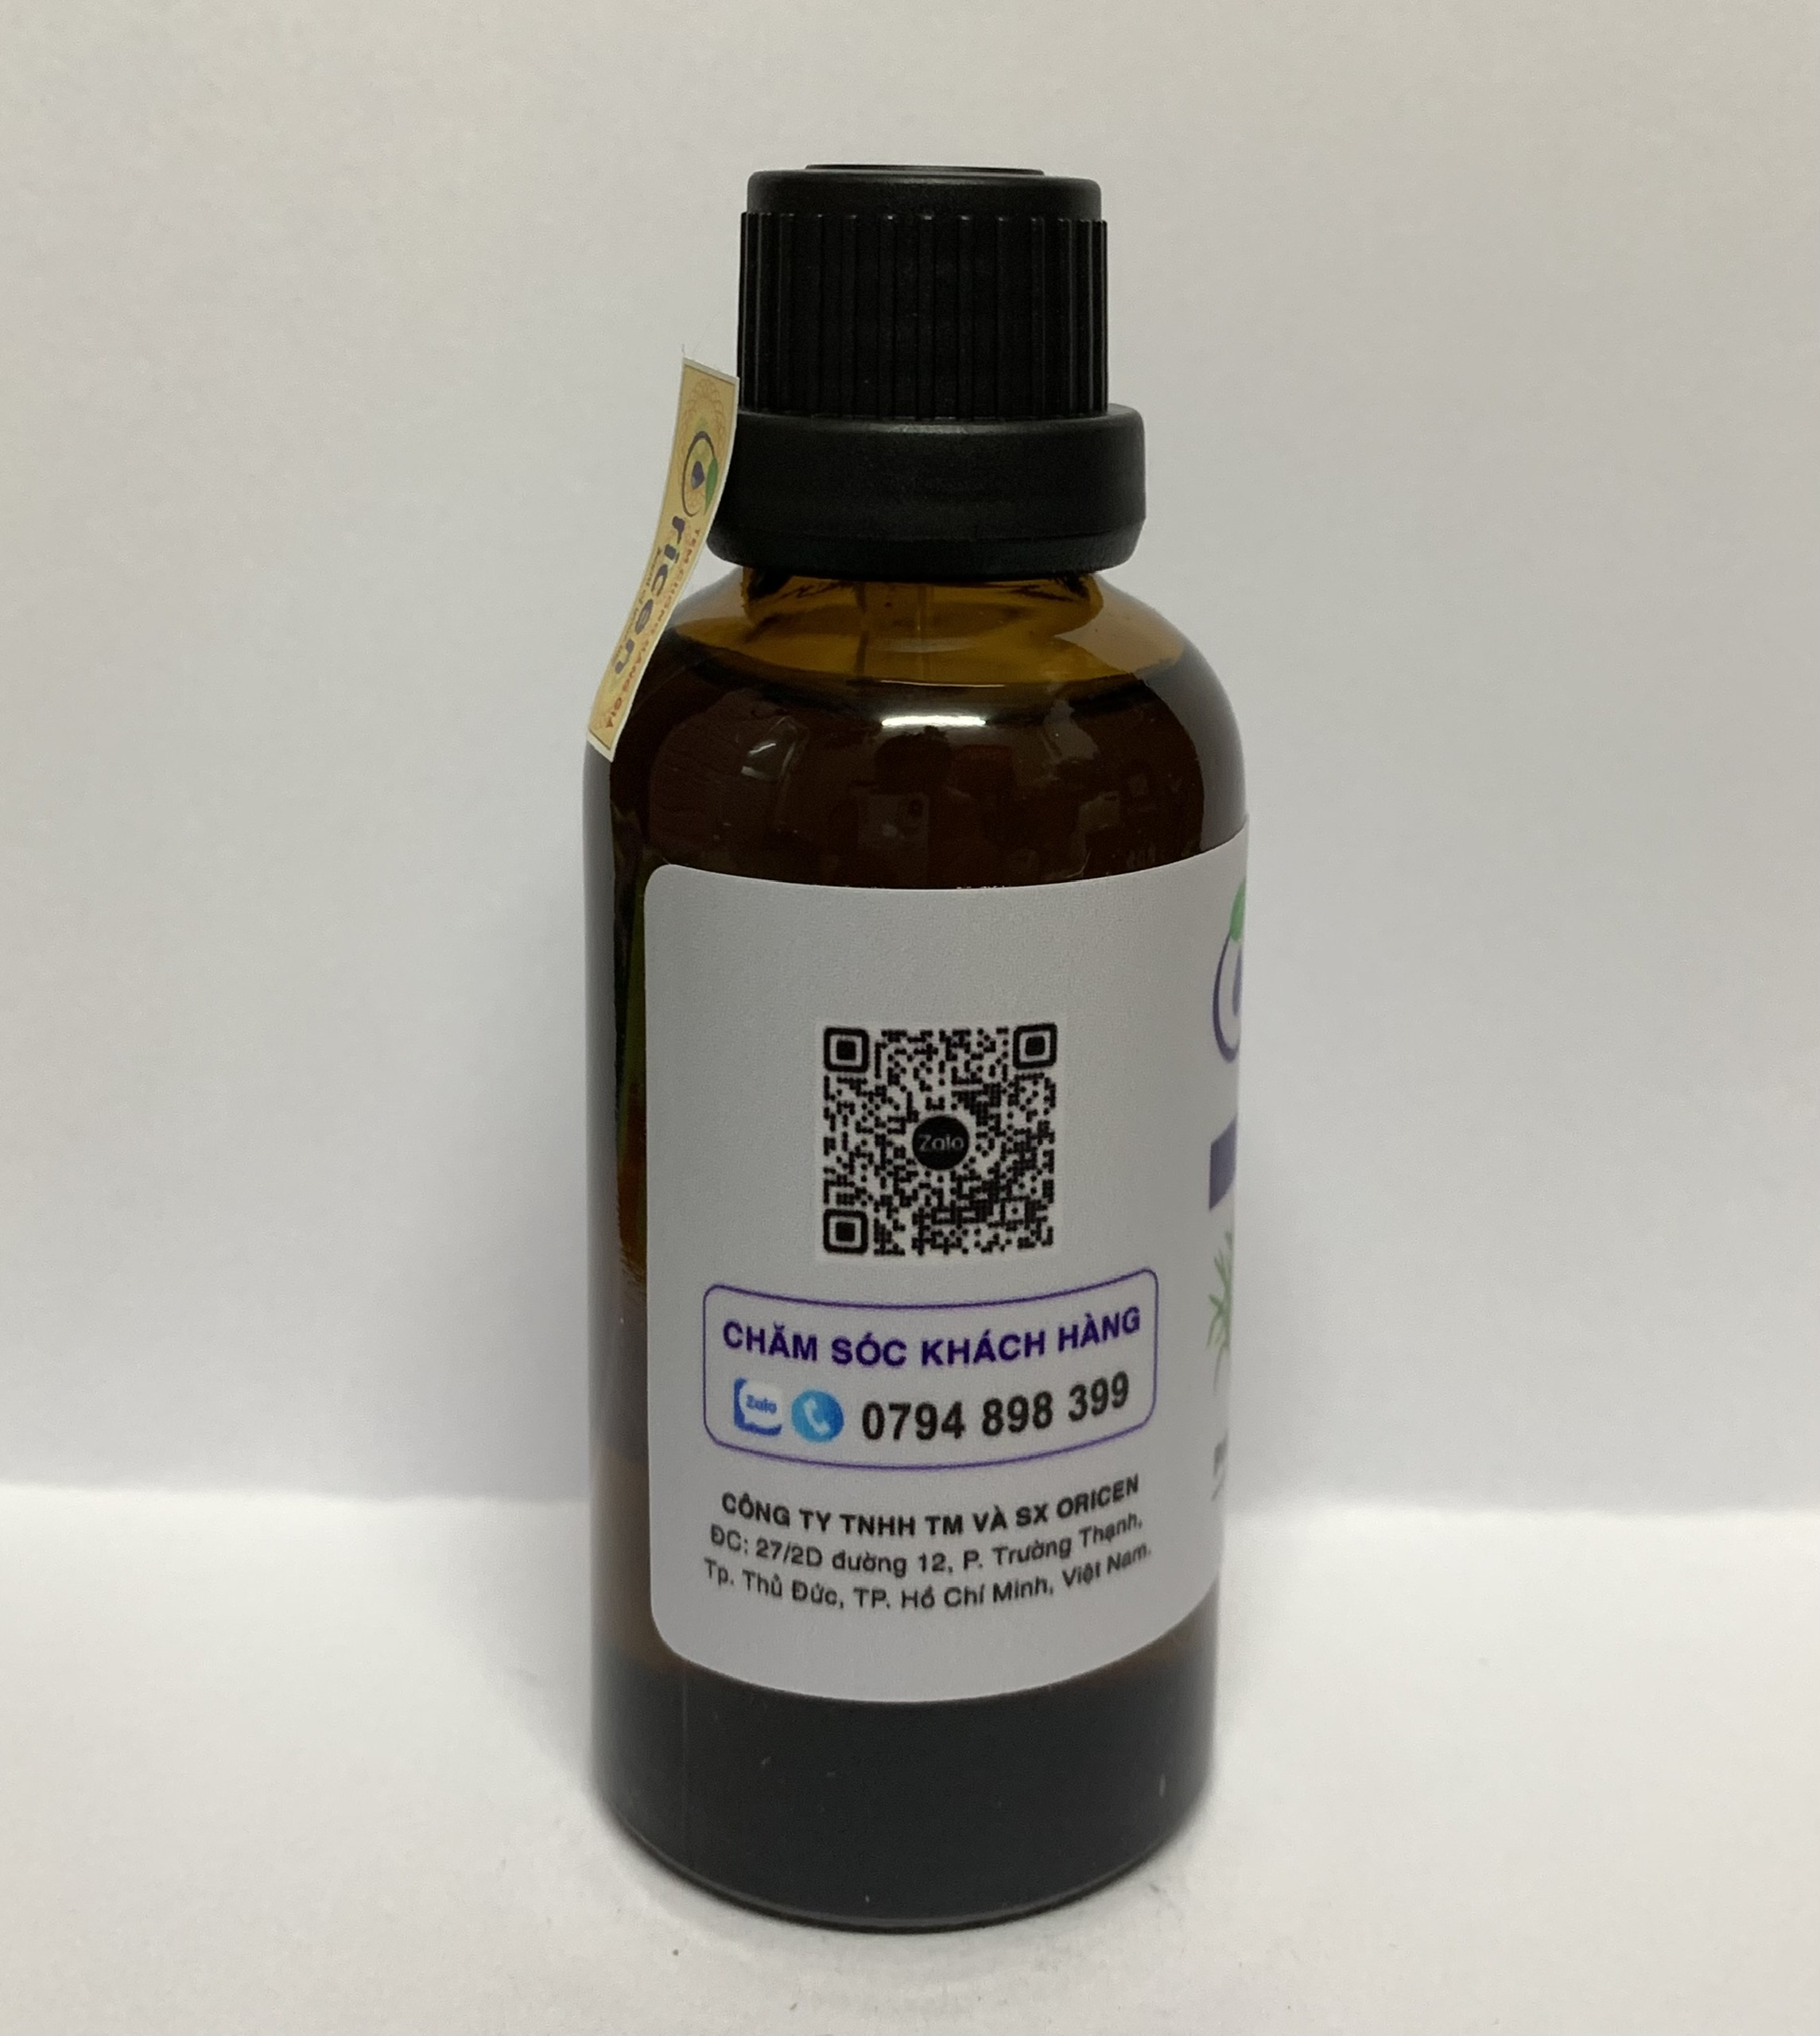 Tinh dầu Cúc La Mã (Chamomile) Oricen 50ml - Giúp kháng khuẩn, giảm căng thẳng và giảm stress